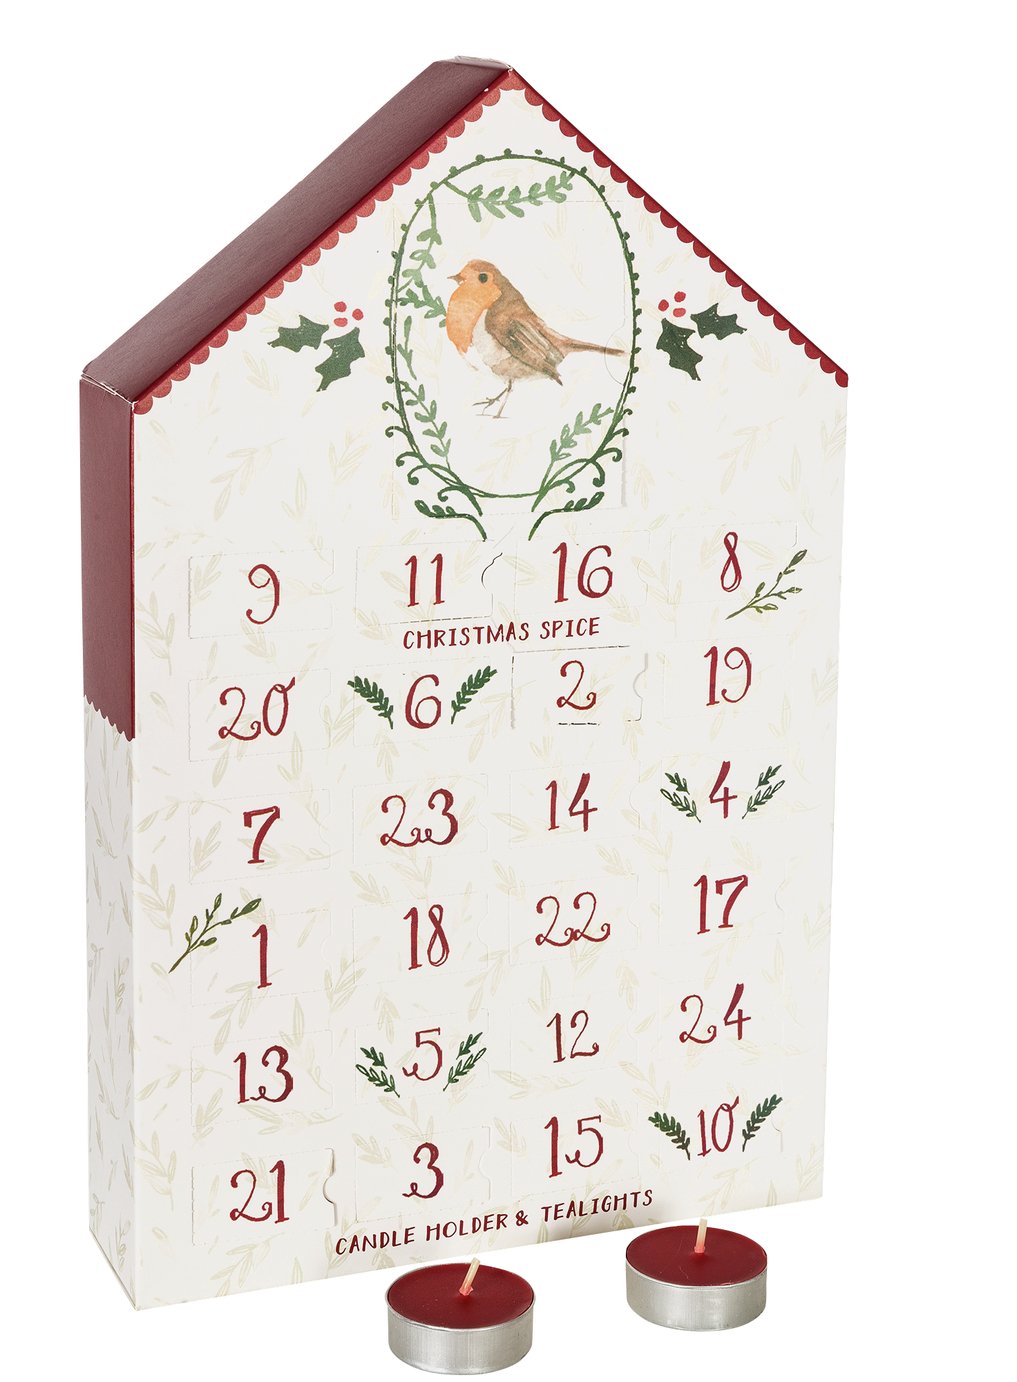 Sainsbury's Home Christmas Spice Advent Calendar Reviews